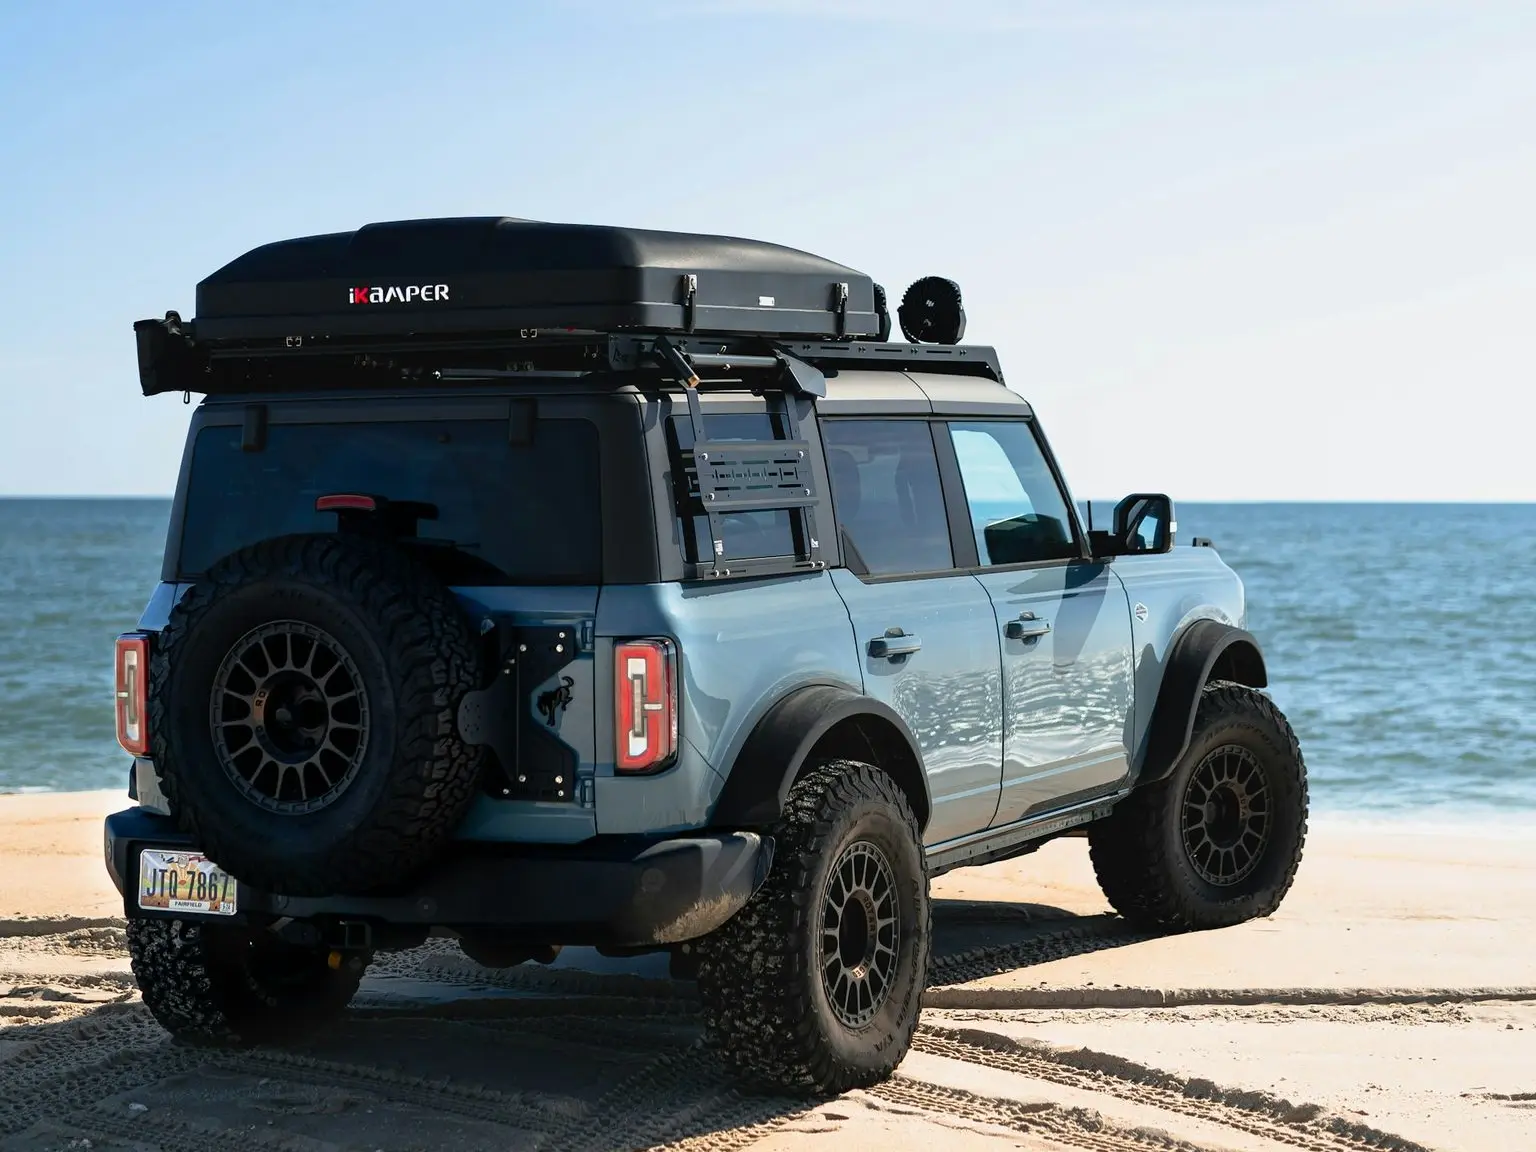 a jeep parked on a beach near the ocean